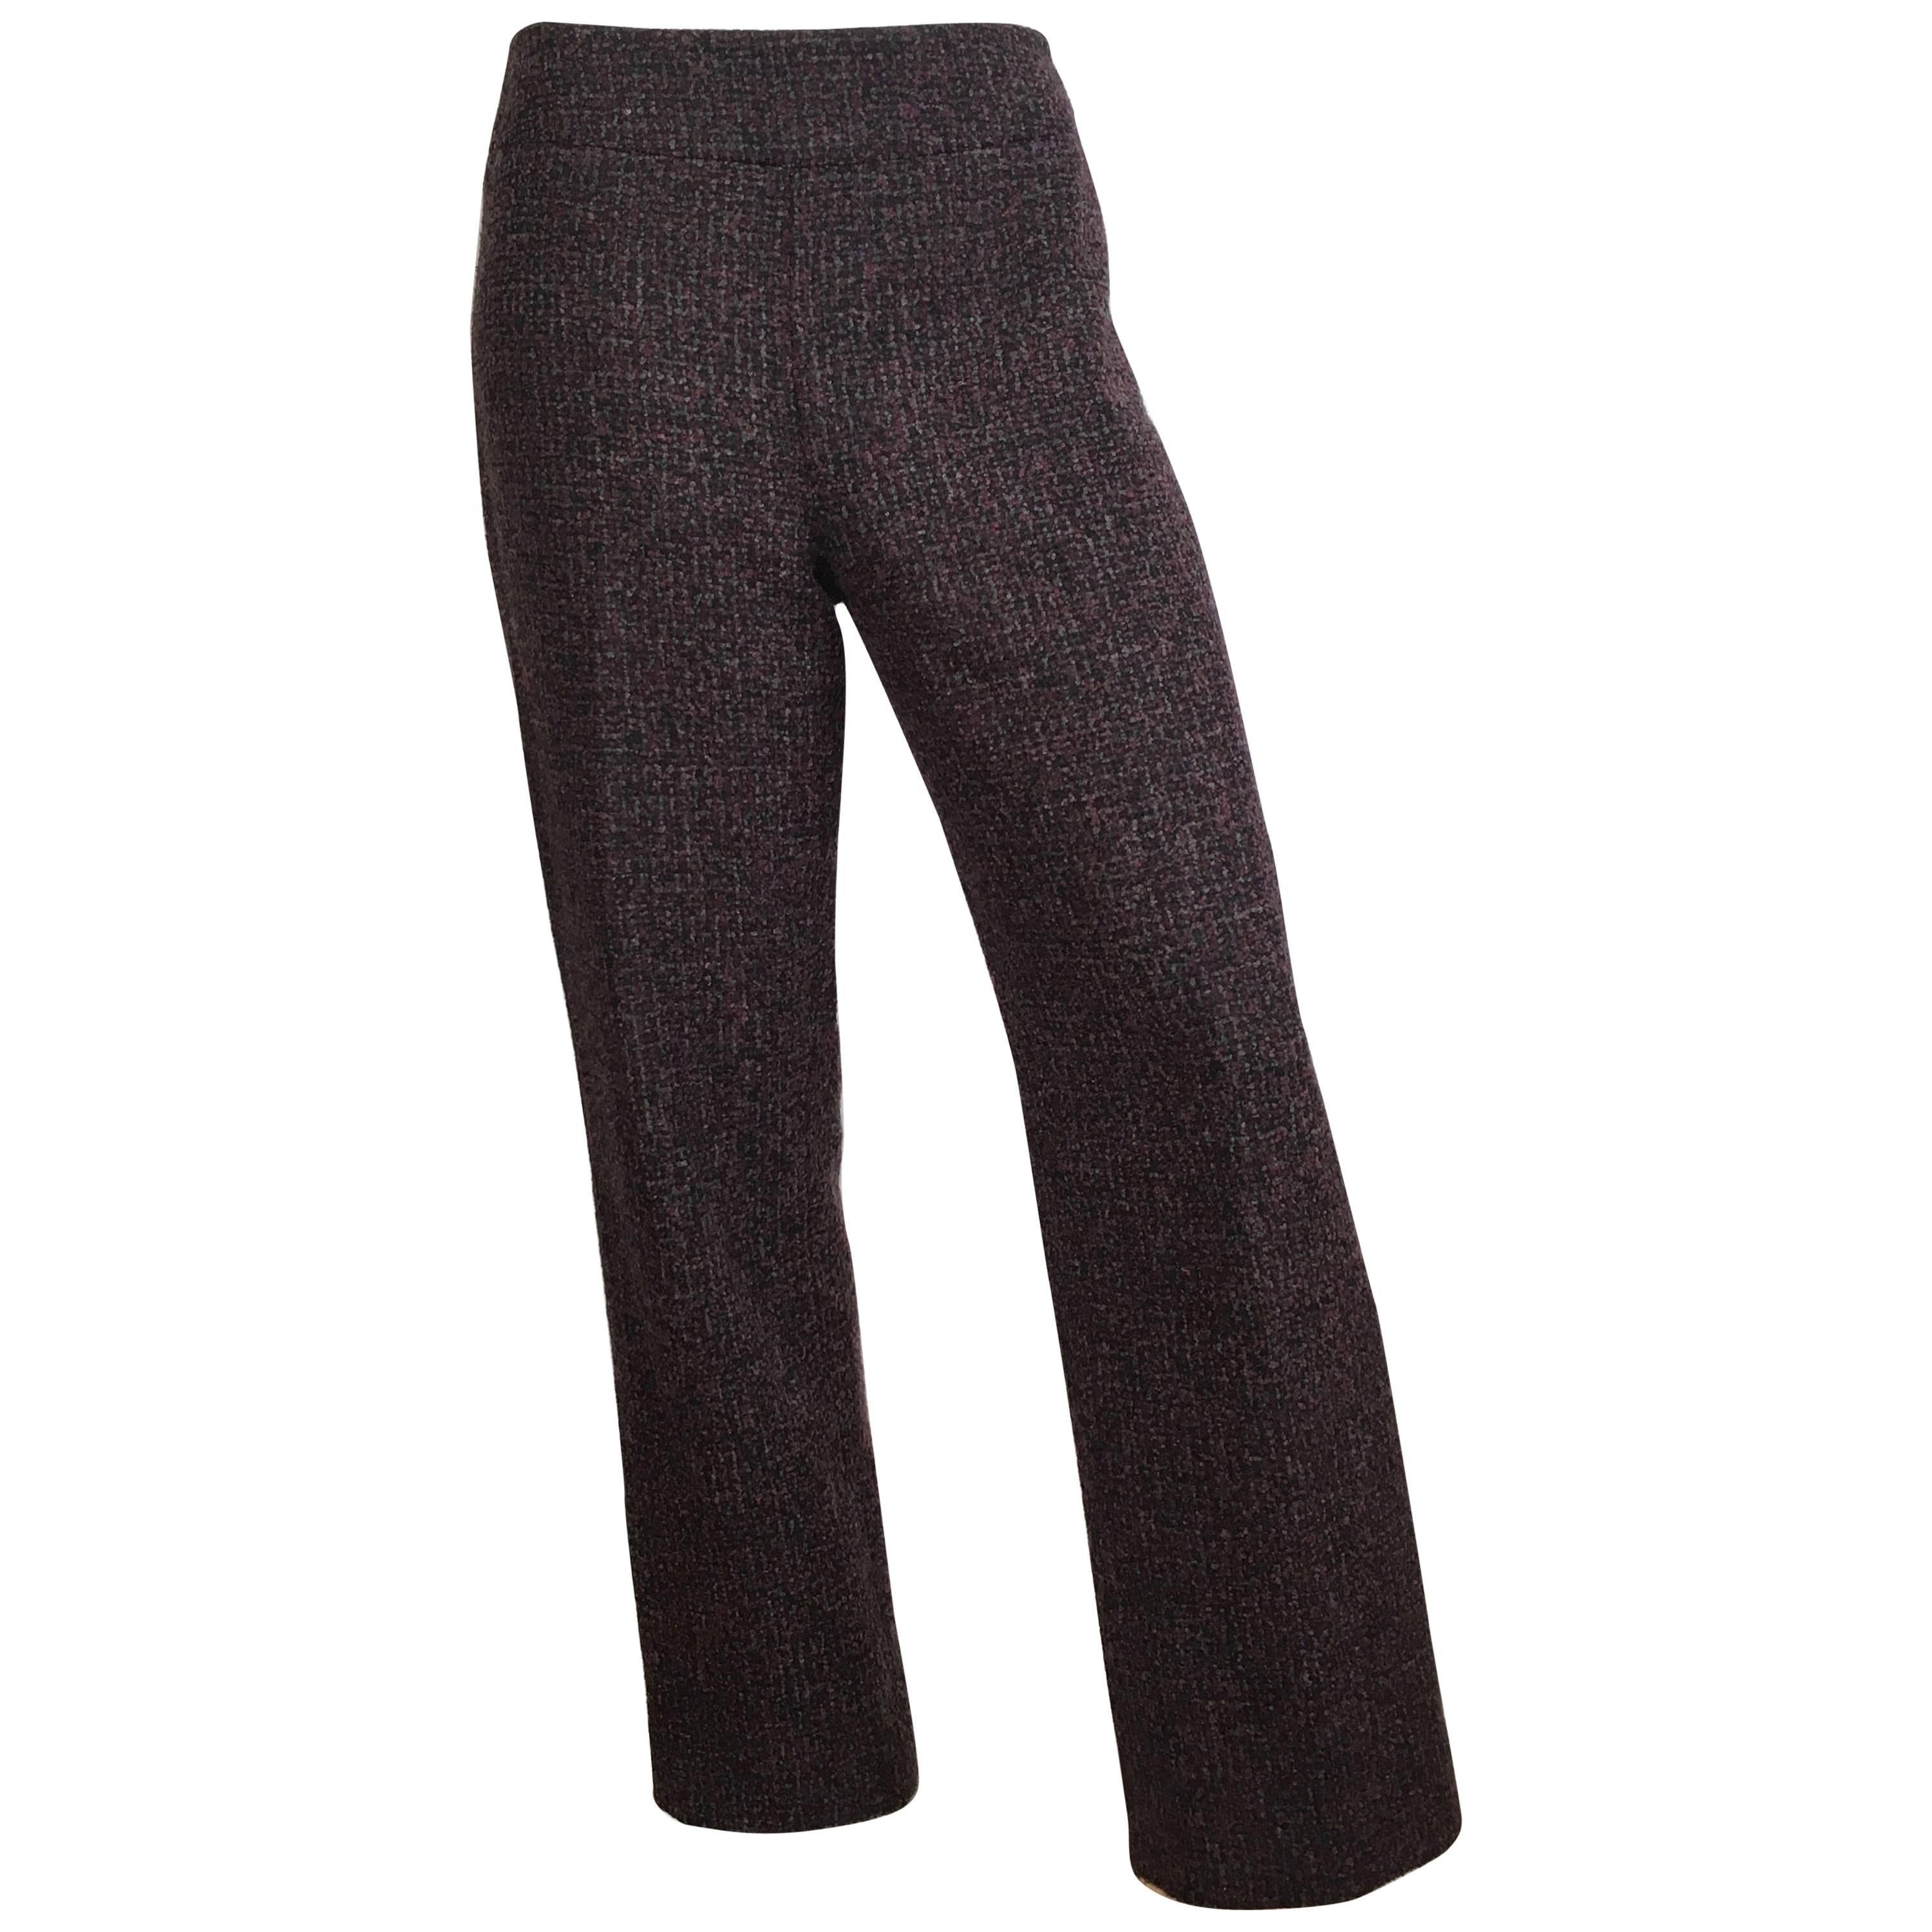 Oscar de la Renta Nubby Flannel Wool Pants Size 6. Made in Italy. For ...